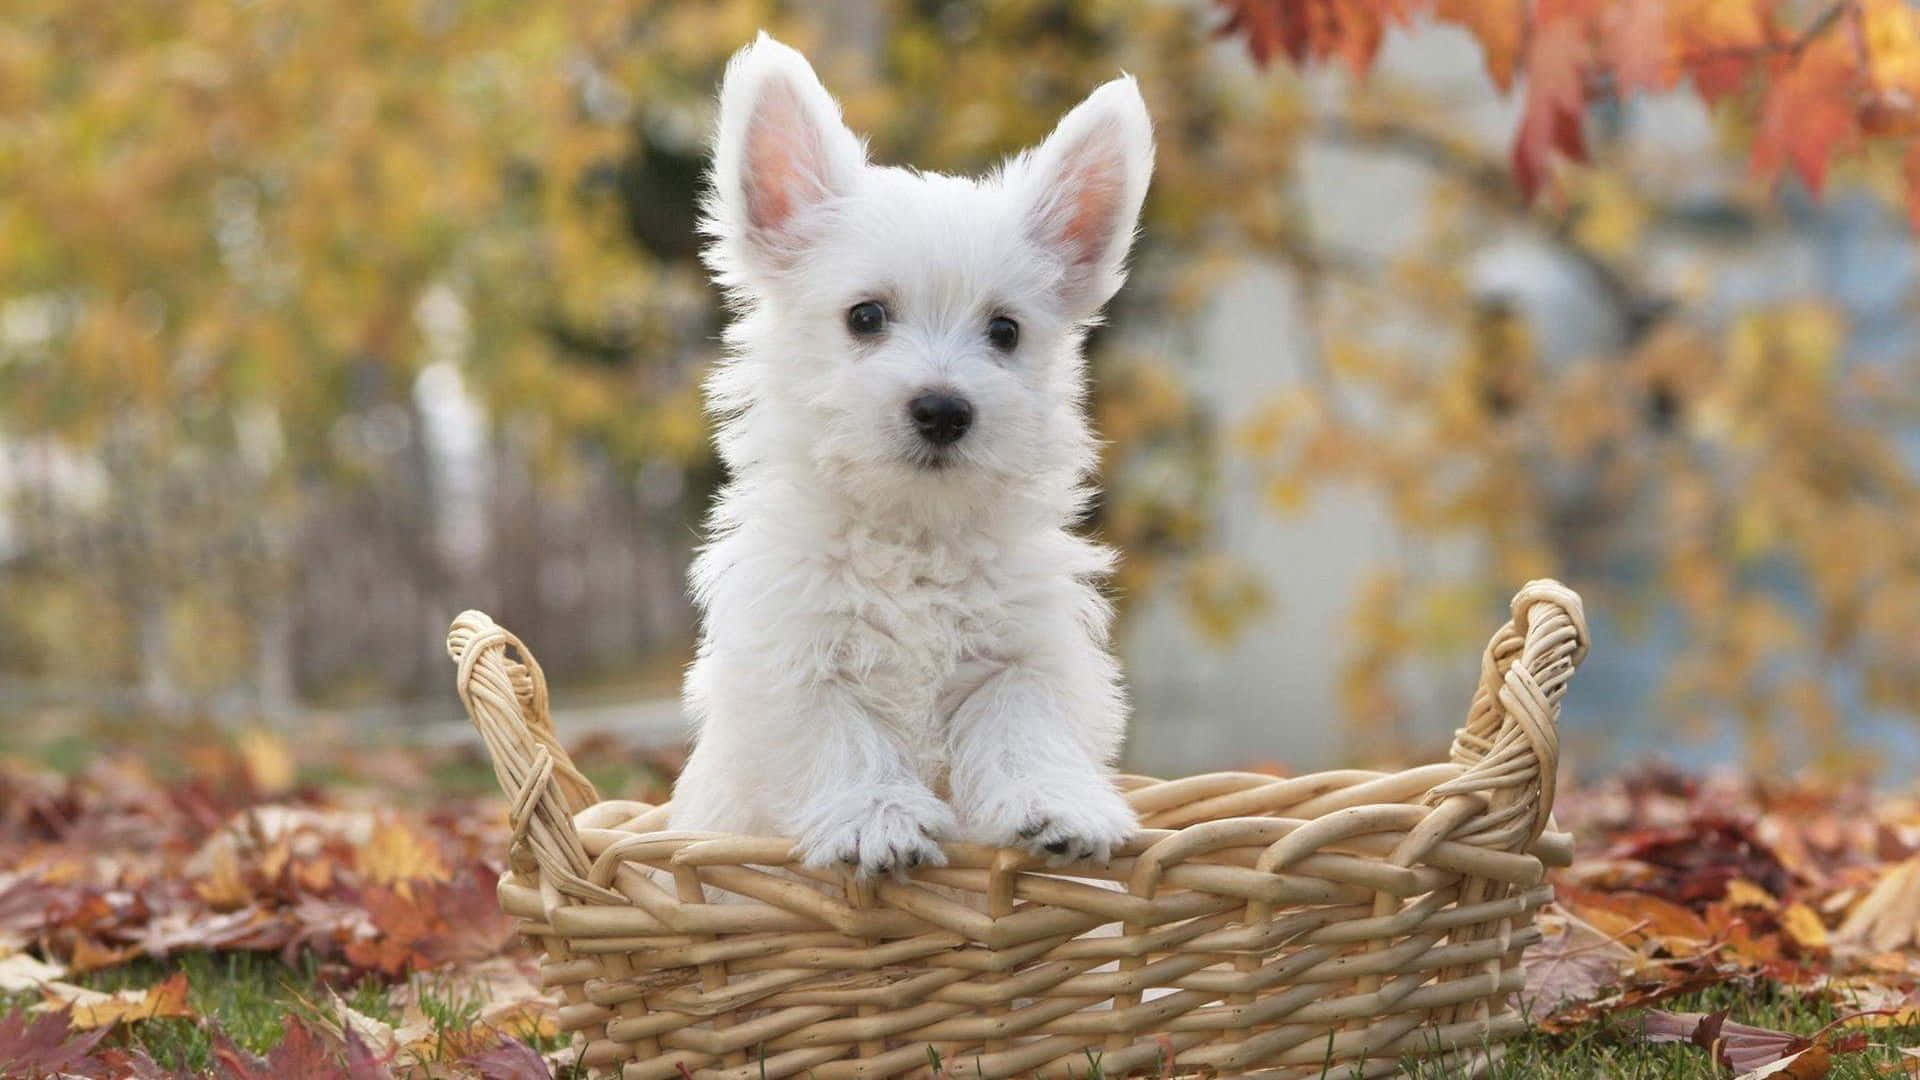 Westhighland Terrier Im Korb, Bilder Von Weißen Hunden